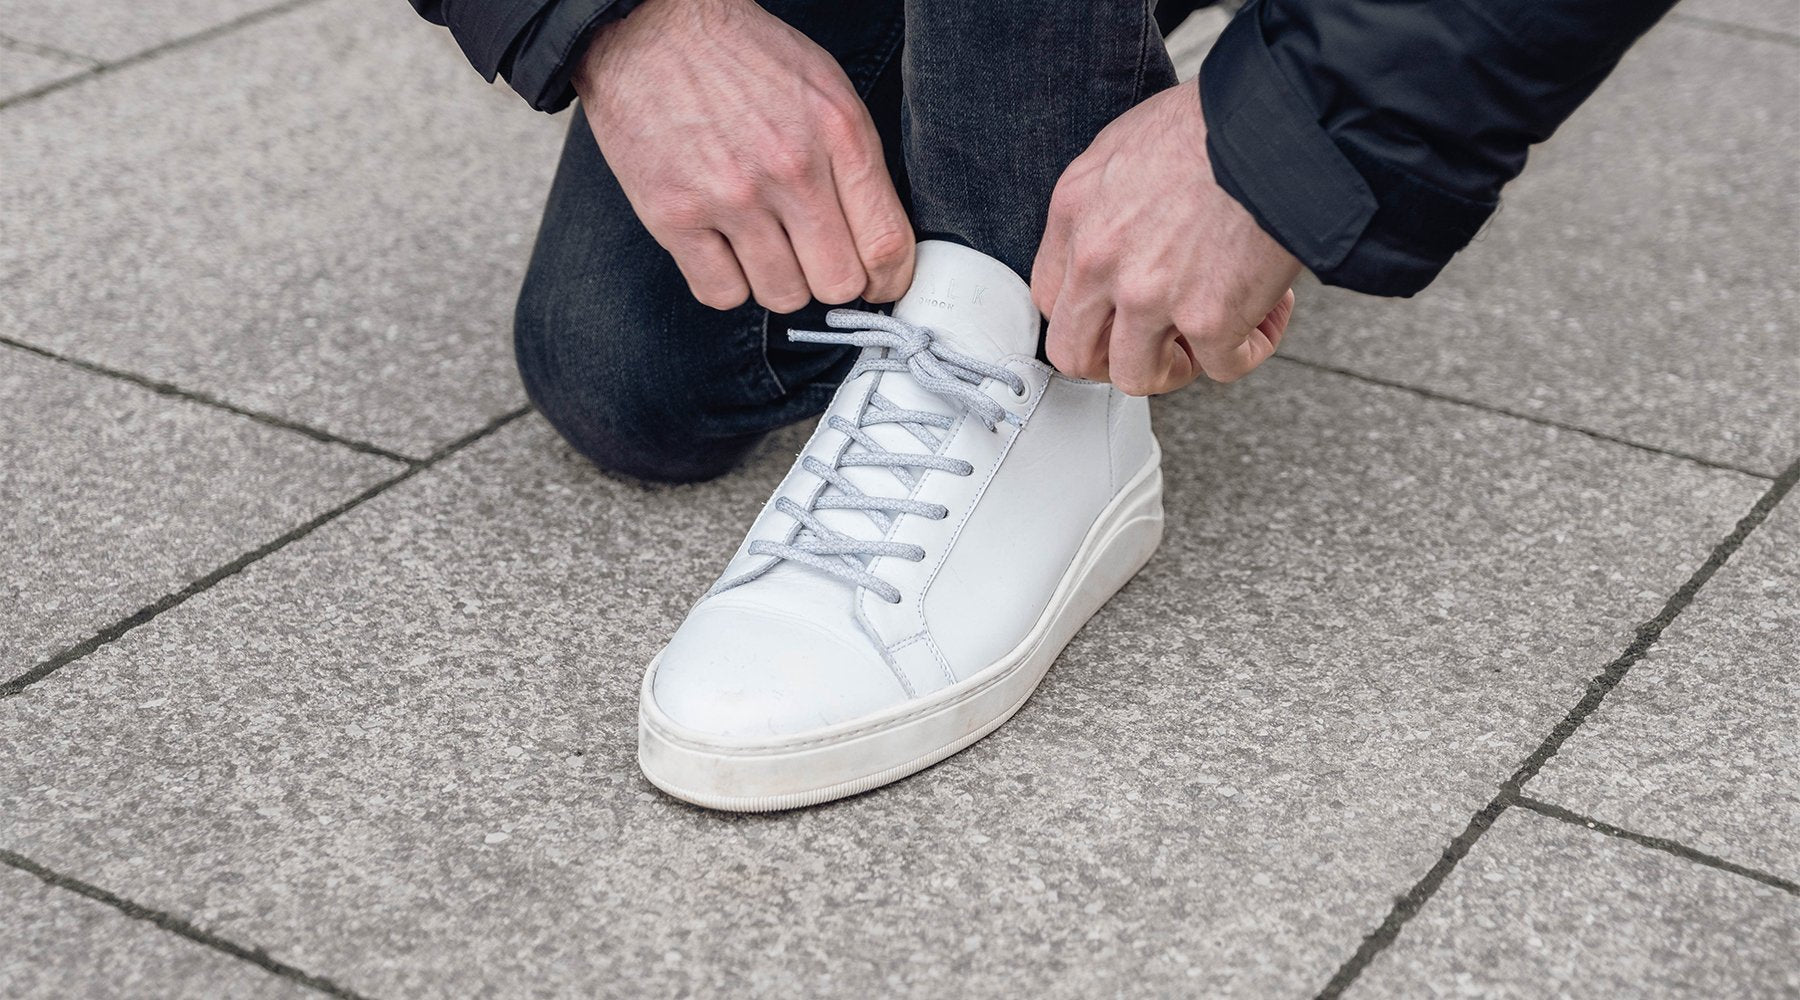 Kilburn Sneakers - The Look Behind The Style | Walk London